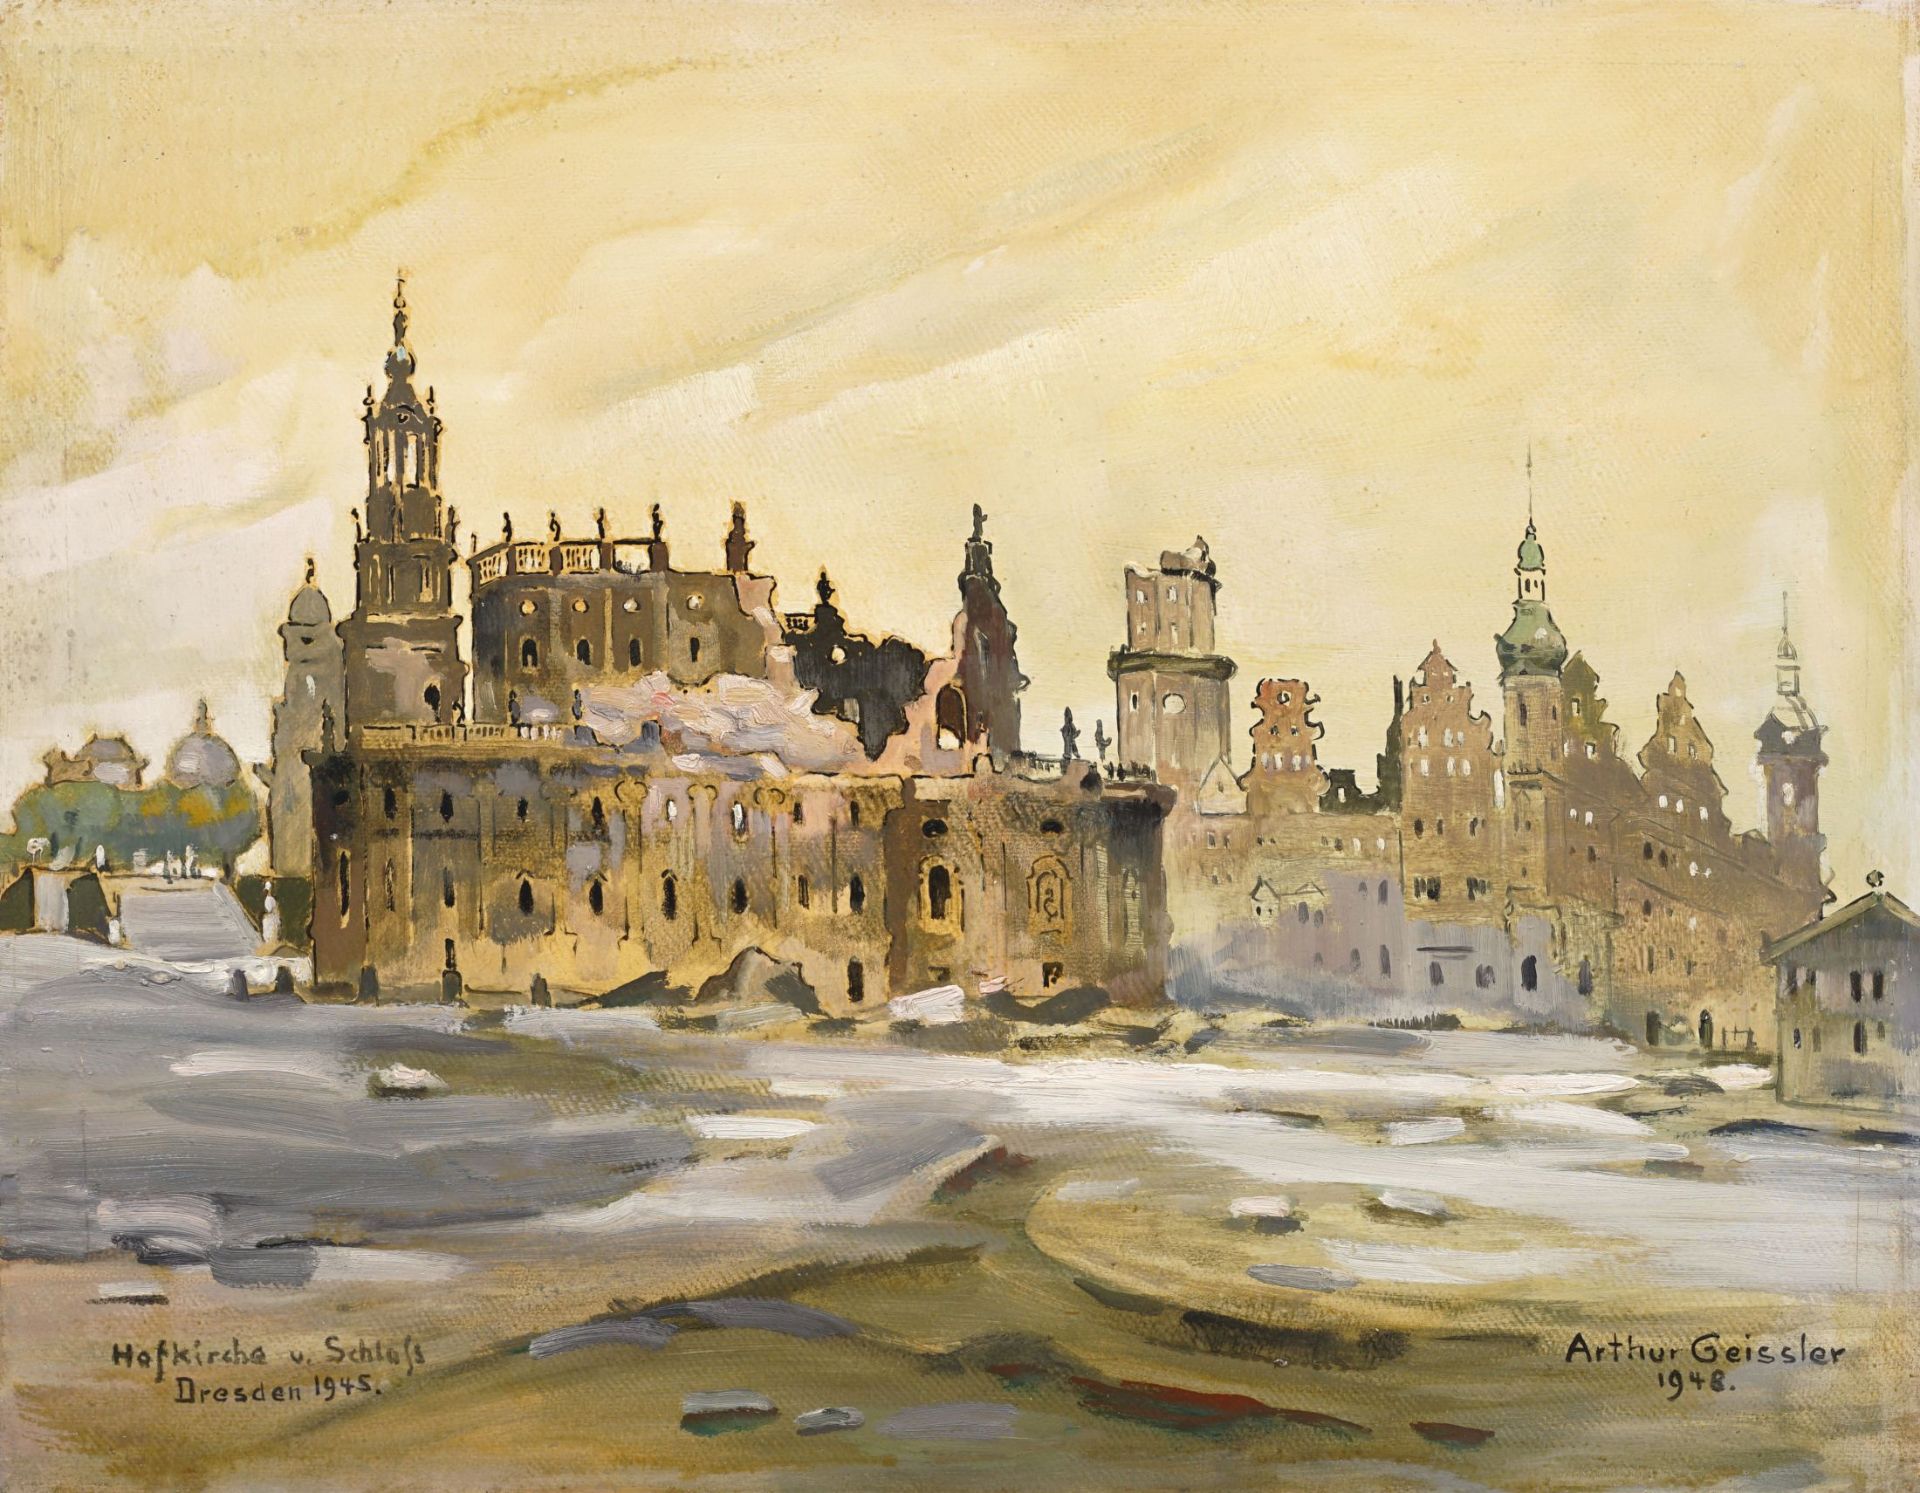 Arthur Geissler "Hofkirche u. Schloss Dresden 1945". 1948.